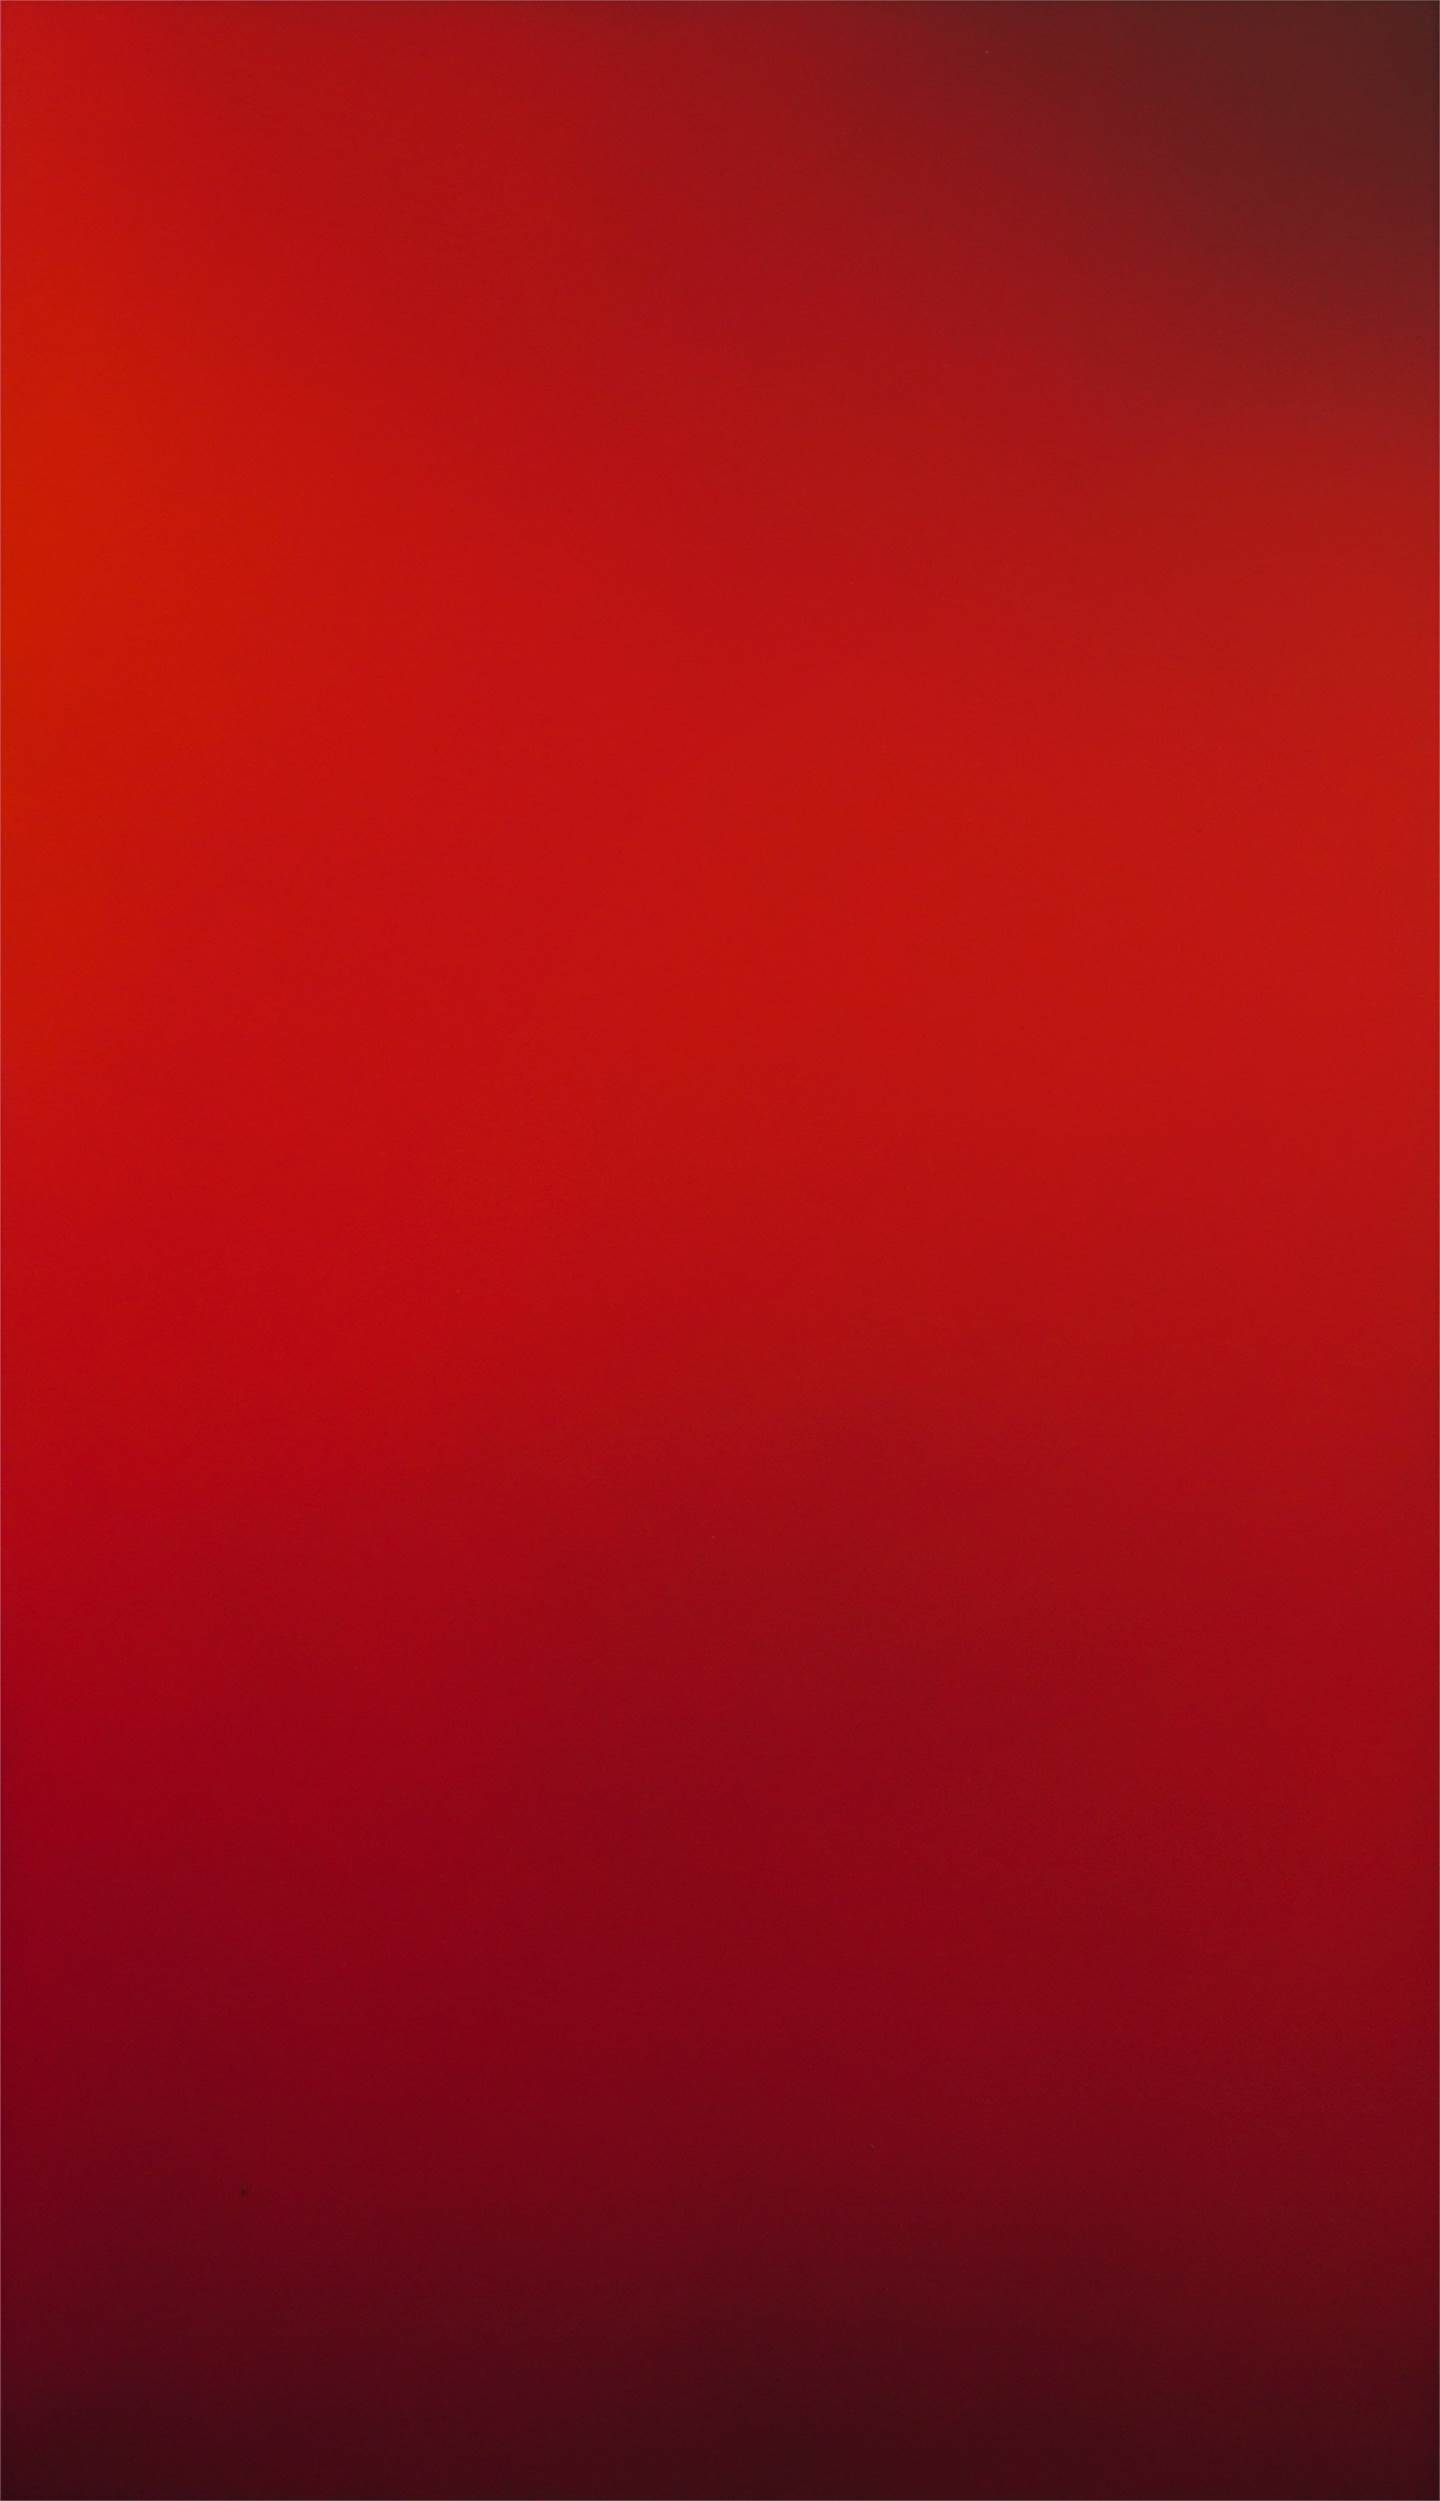 Red Summer. Summer 2022, original Abstract Oil Painting by Evgeniya Antonova